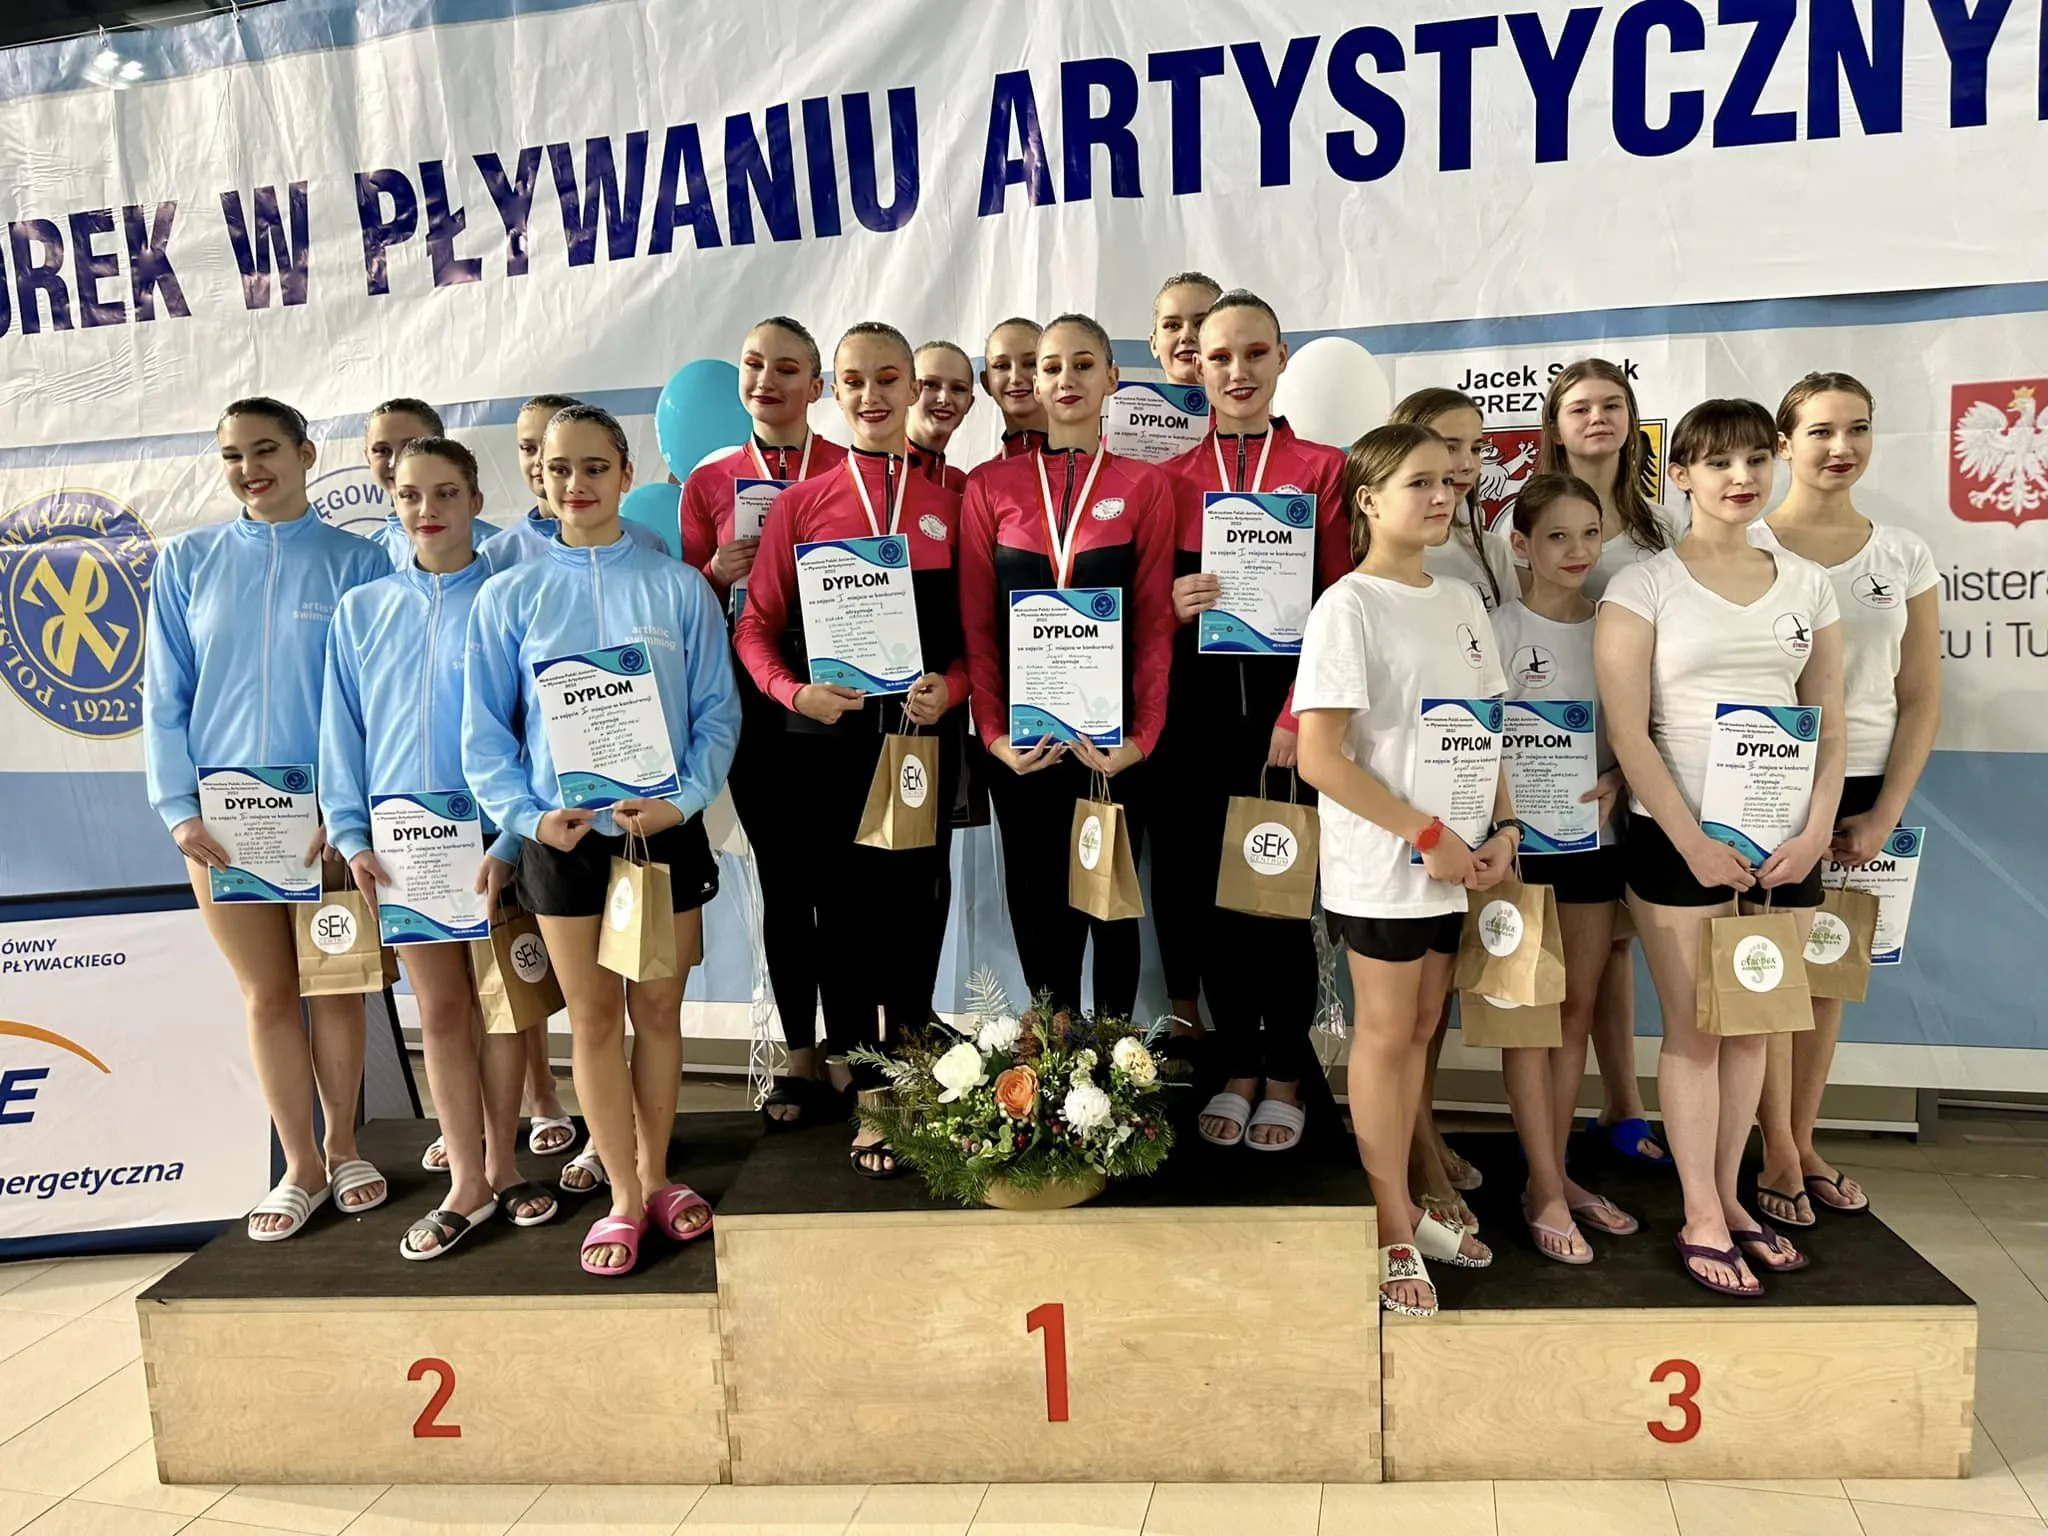 Mistrzostwa Polski Juniorów 2023